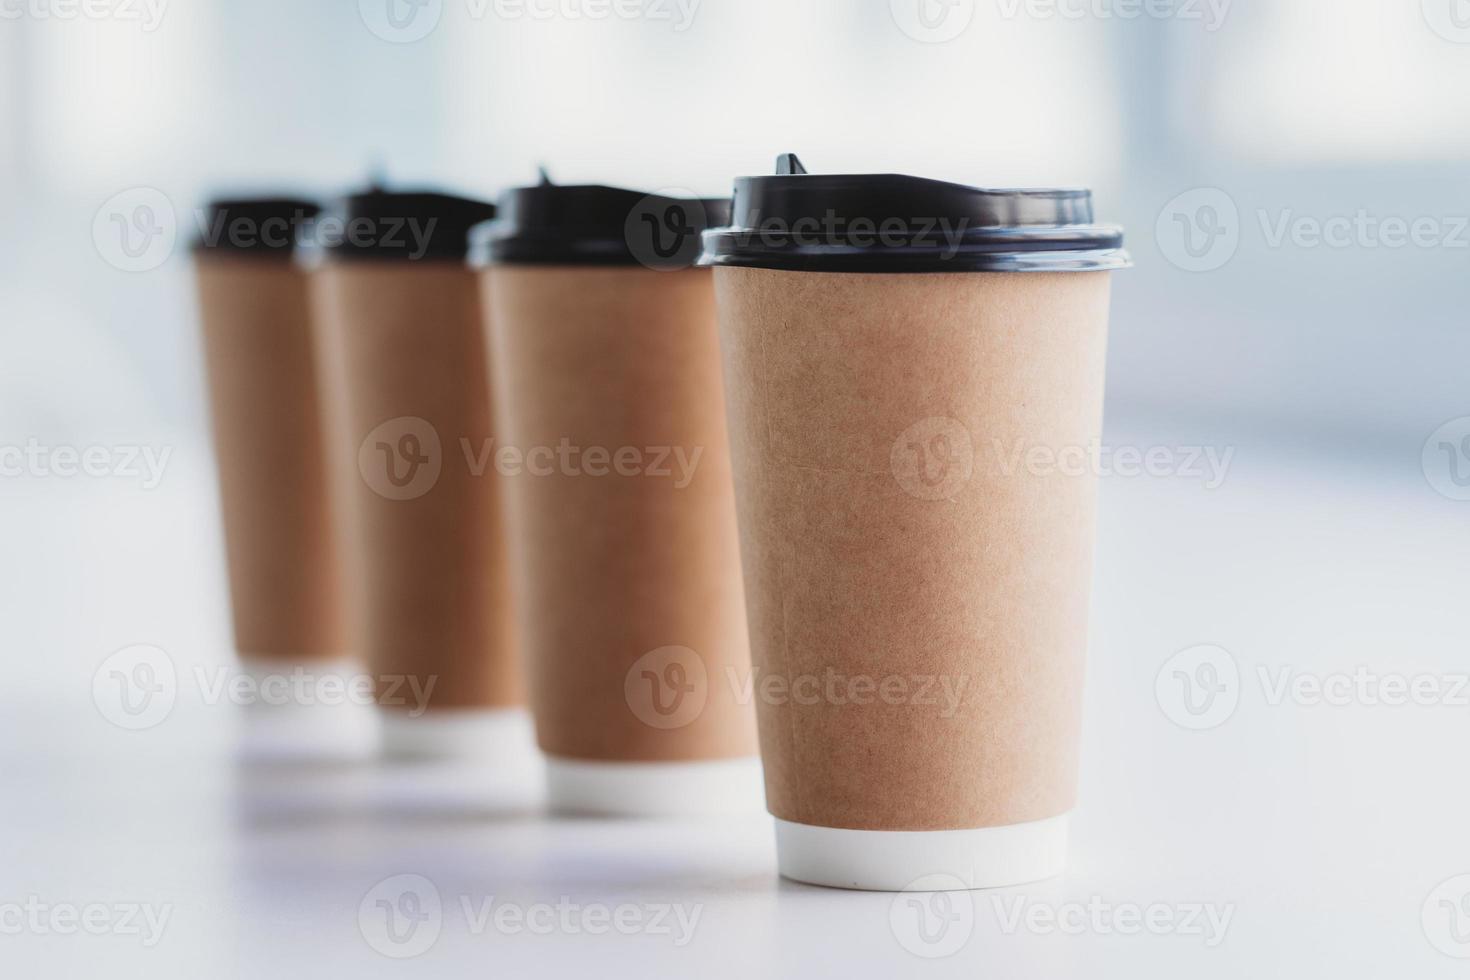 quatre tasses de café sont placées d'affilée sur la table photo